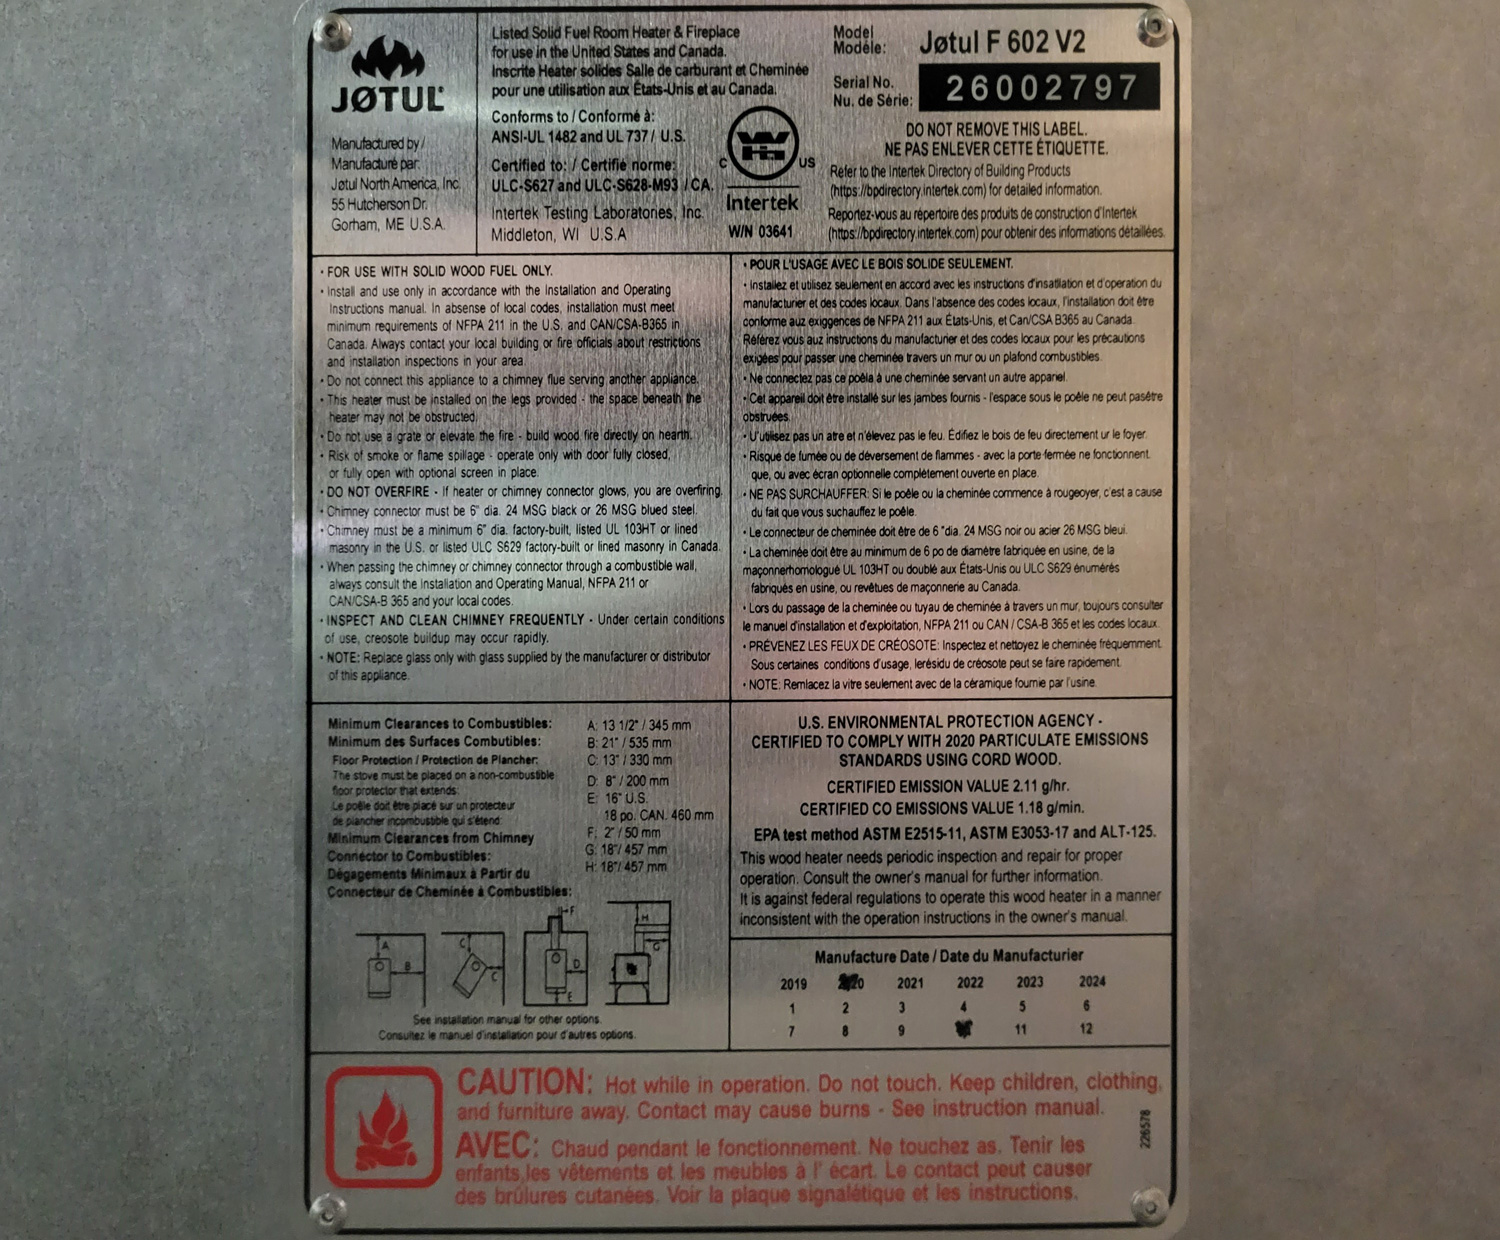 Appliance certification/emission standard label